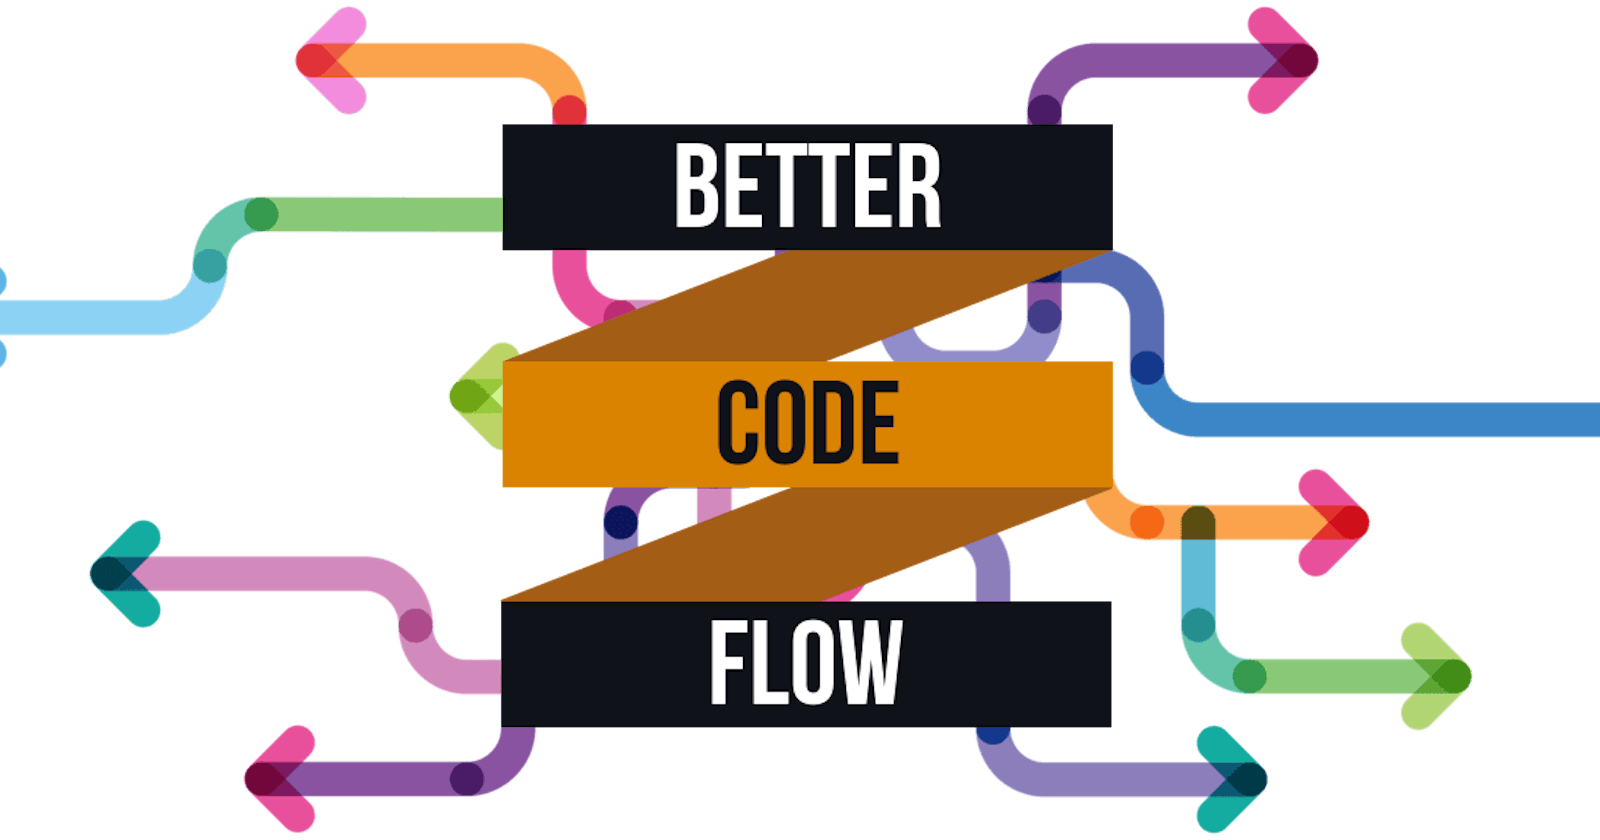 Better code flow - tools